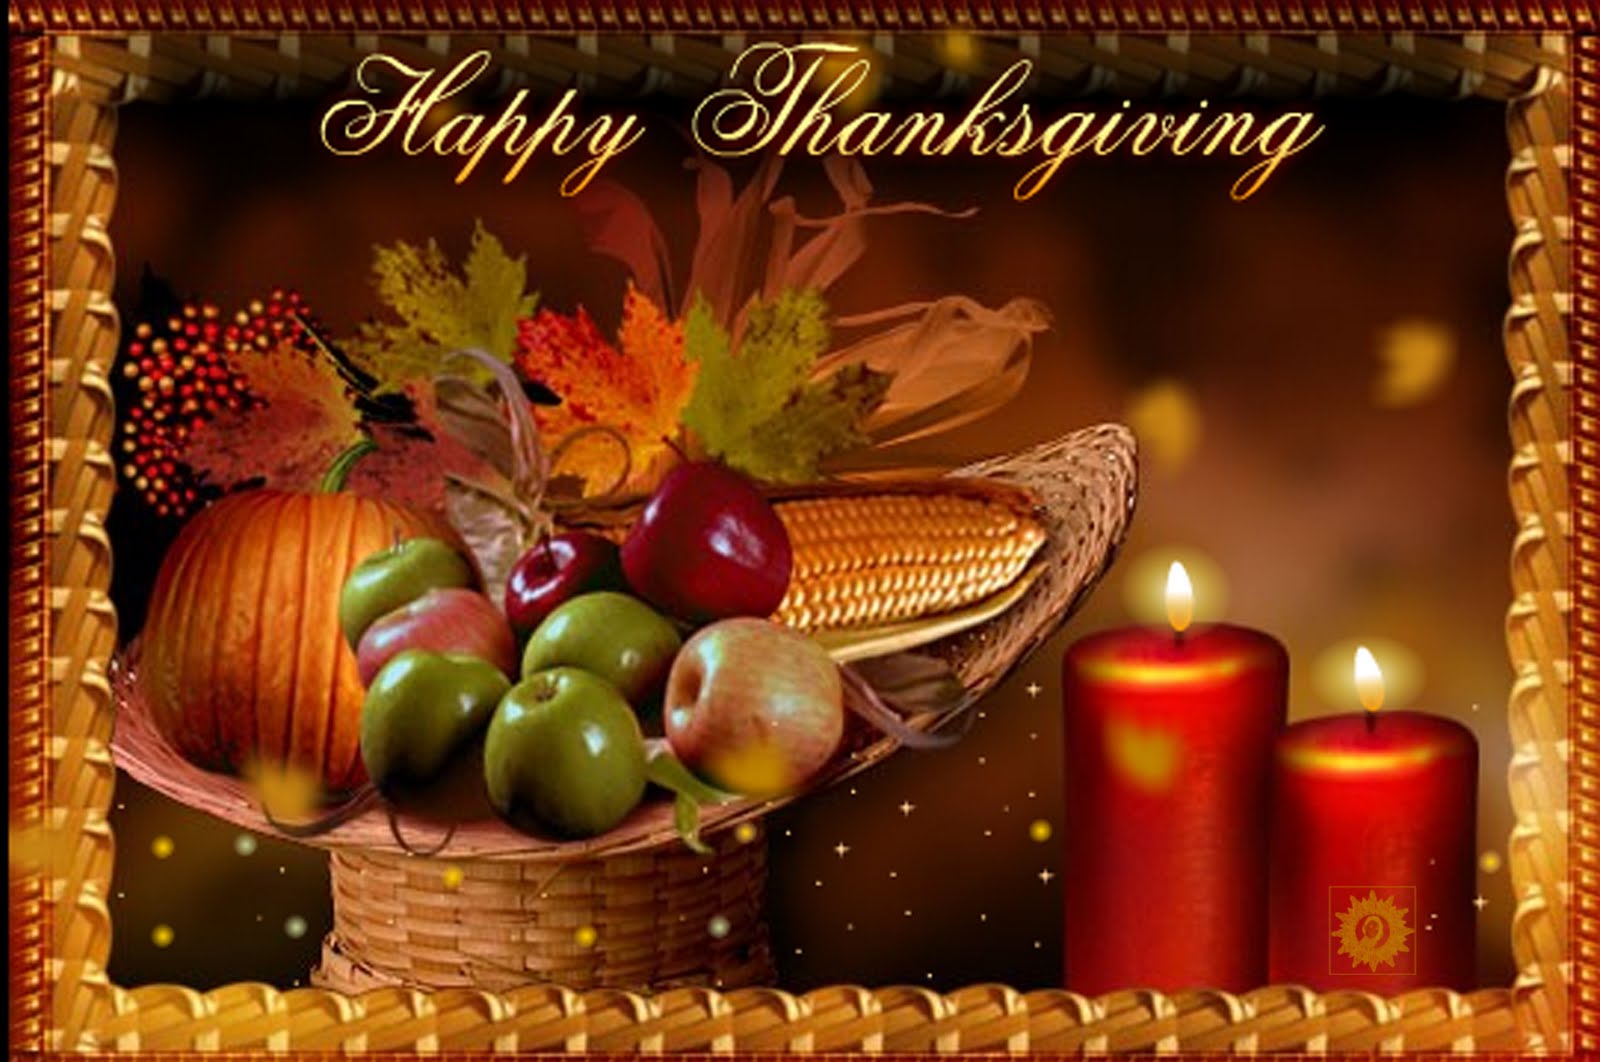 thanksgiving wallpaper,still life,still life photography,holiday,natural foods,thanksgiving